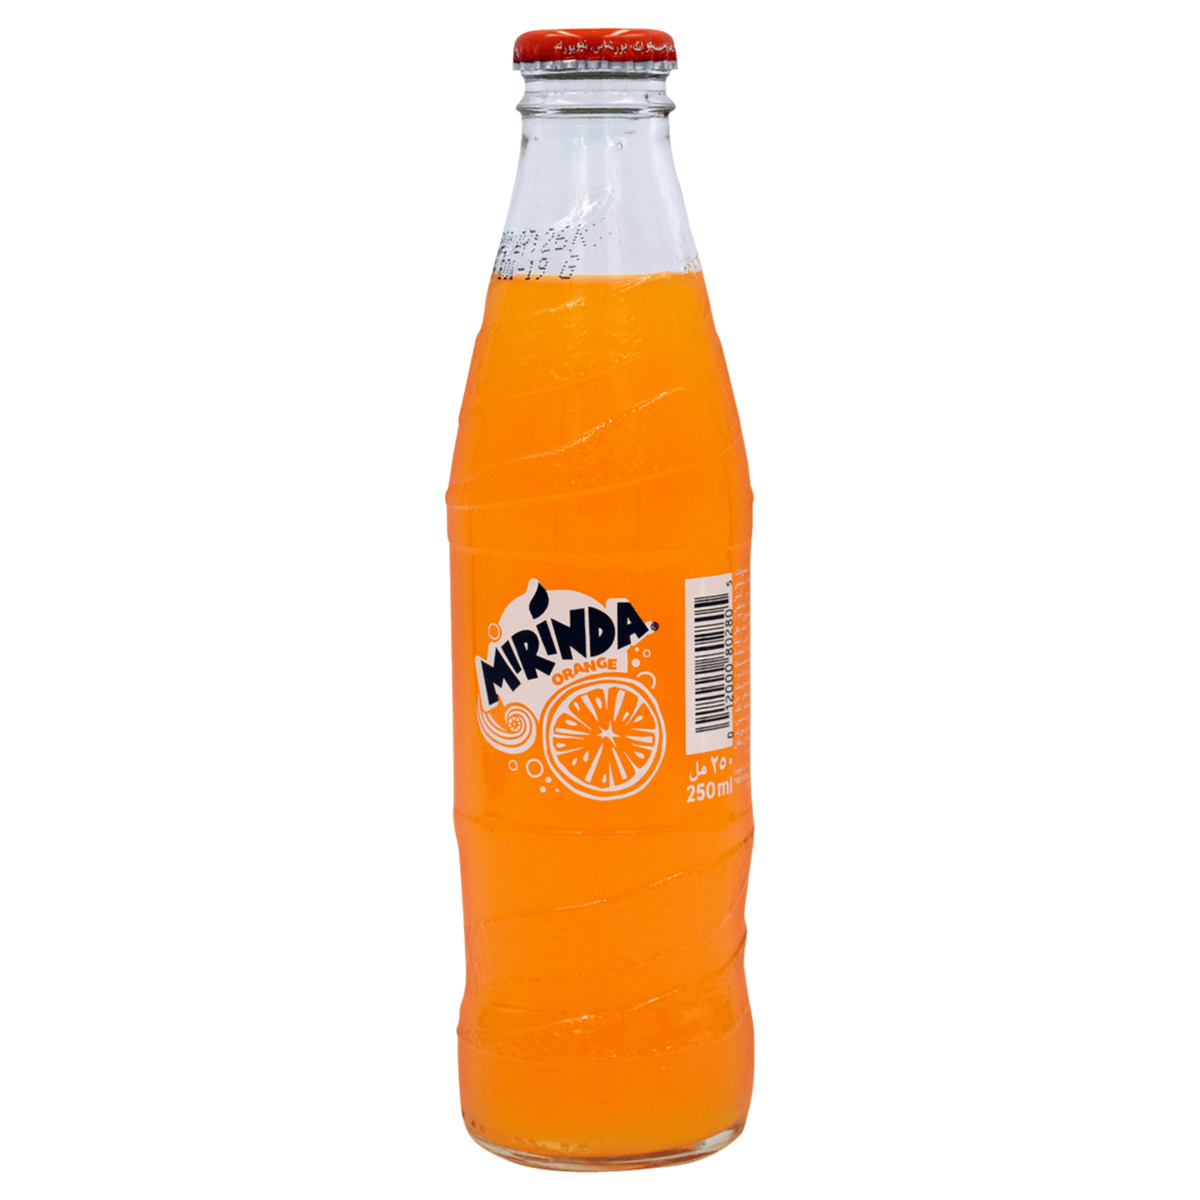 ميرندا مشروب غازي بالبرتقال 250 مل × 6